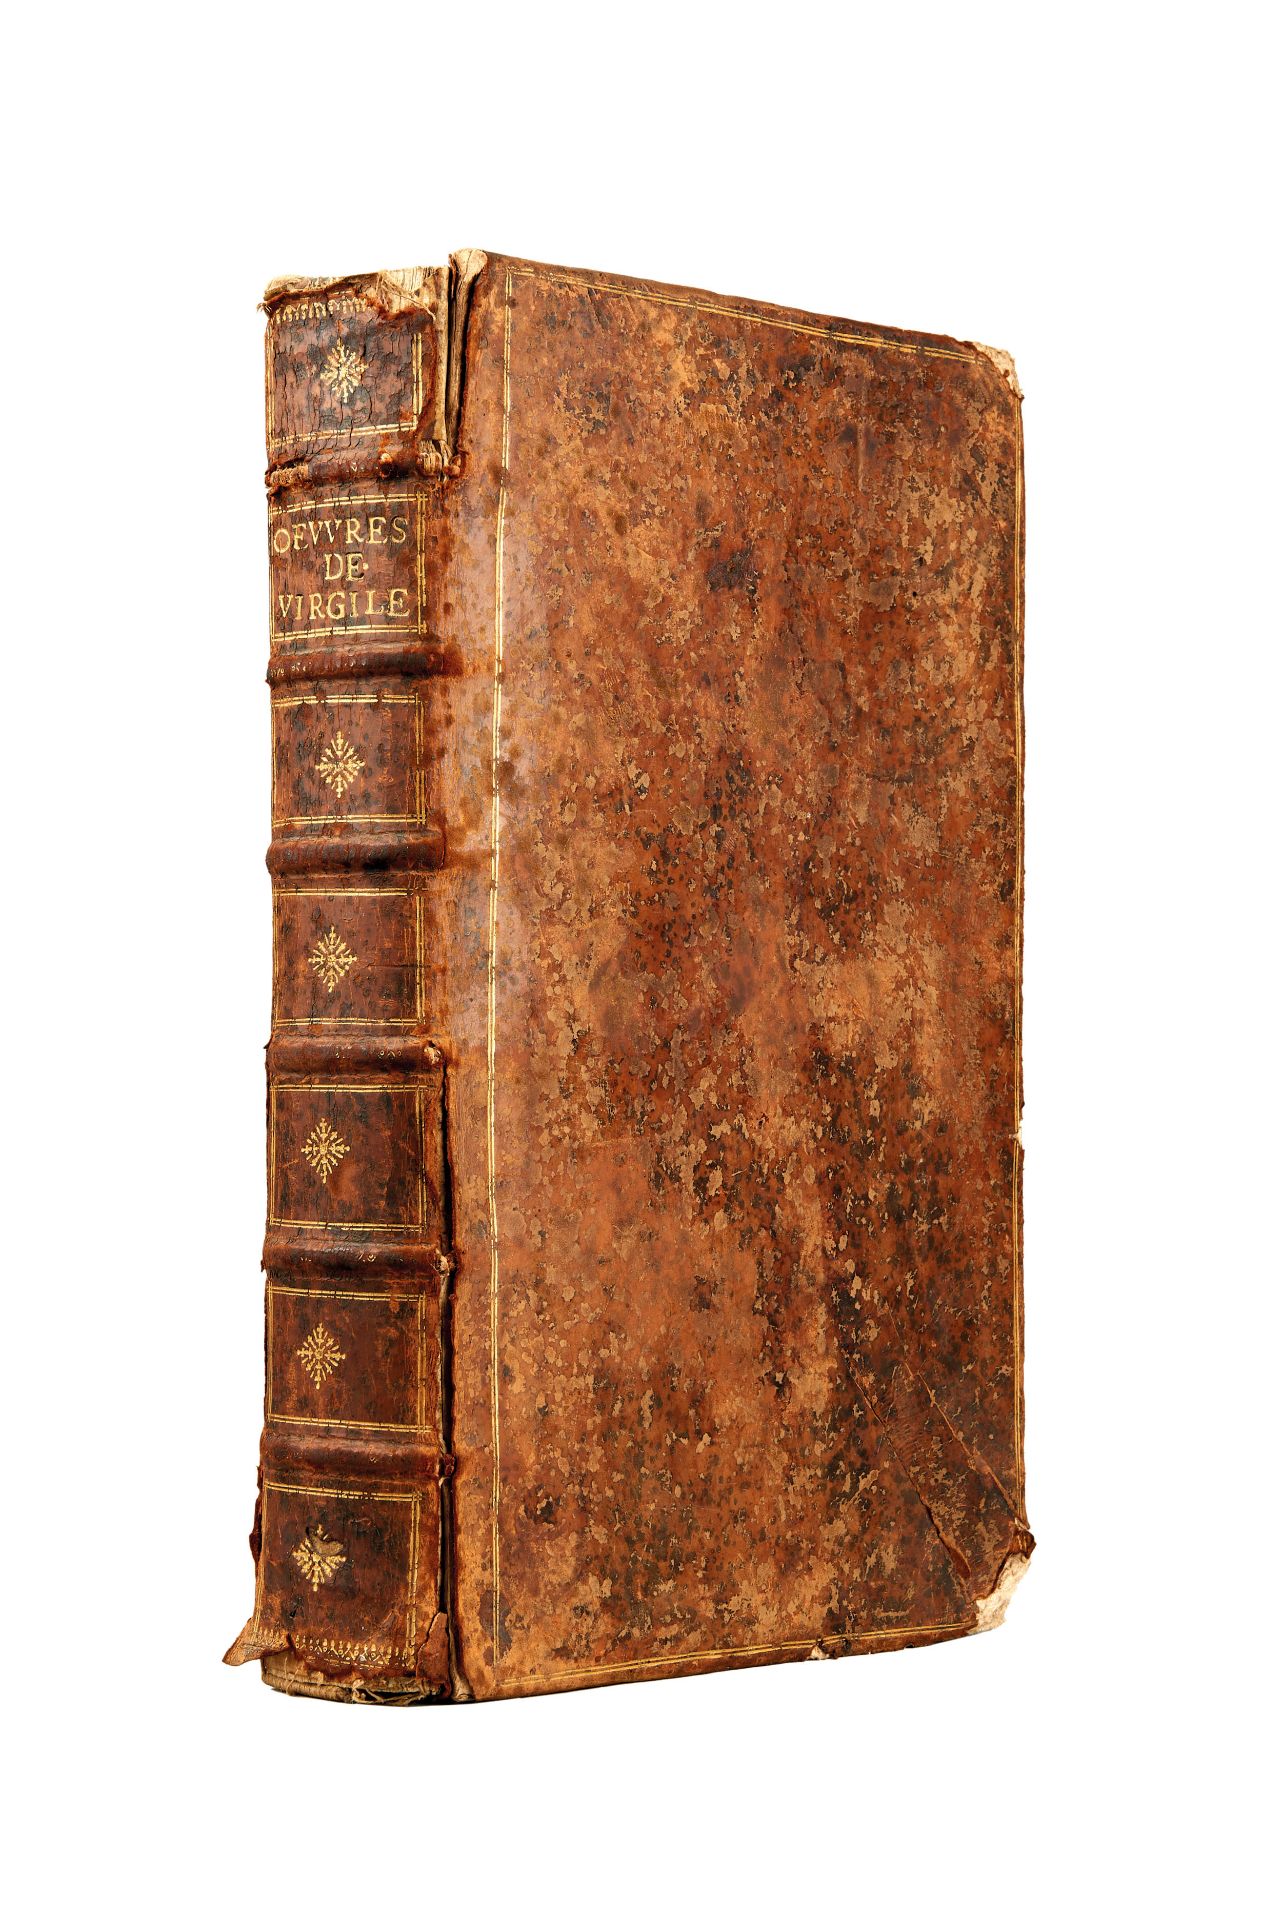 MAROLLES, Michel de (1600-1681). Les oeuvres de Virgile traduites en prose. Paris: Quinet, 1649.